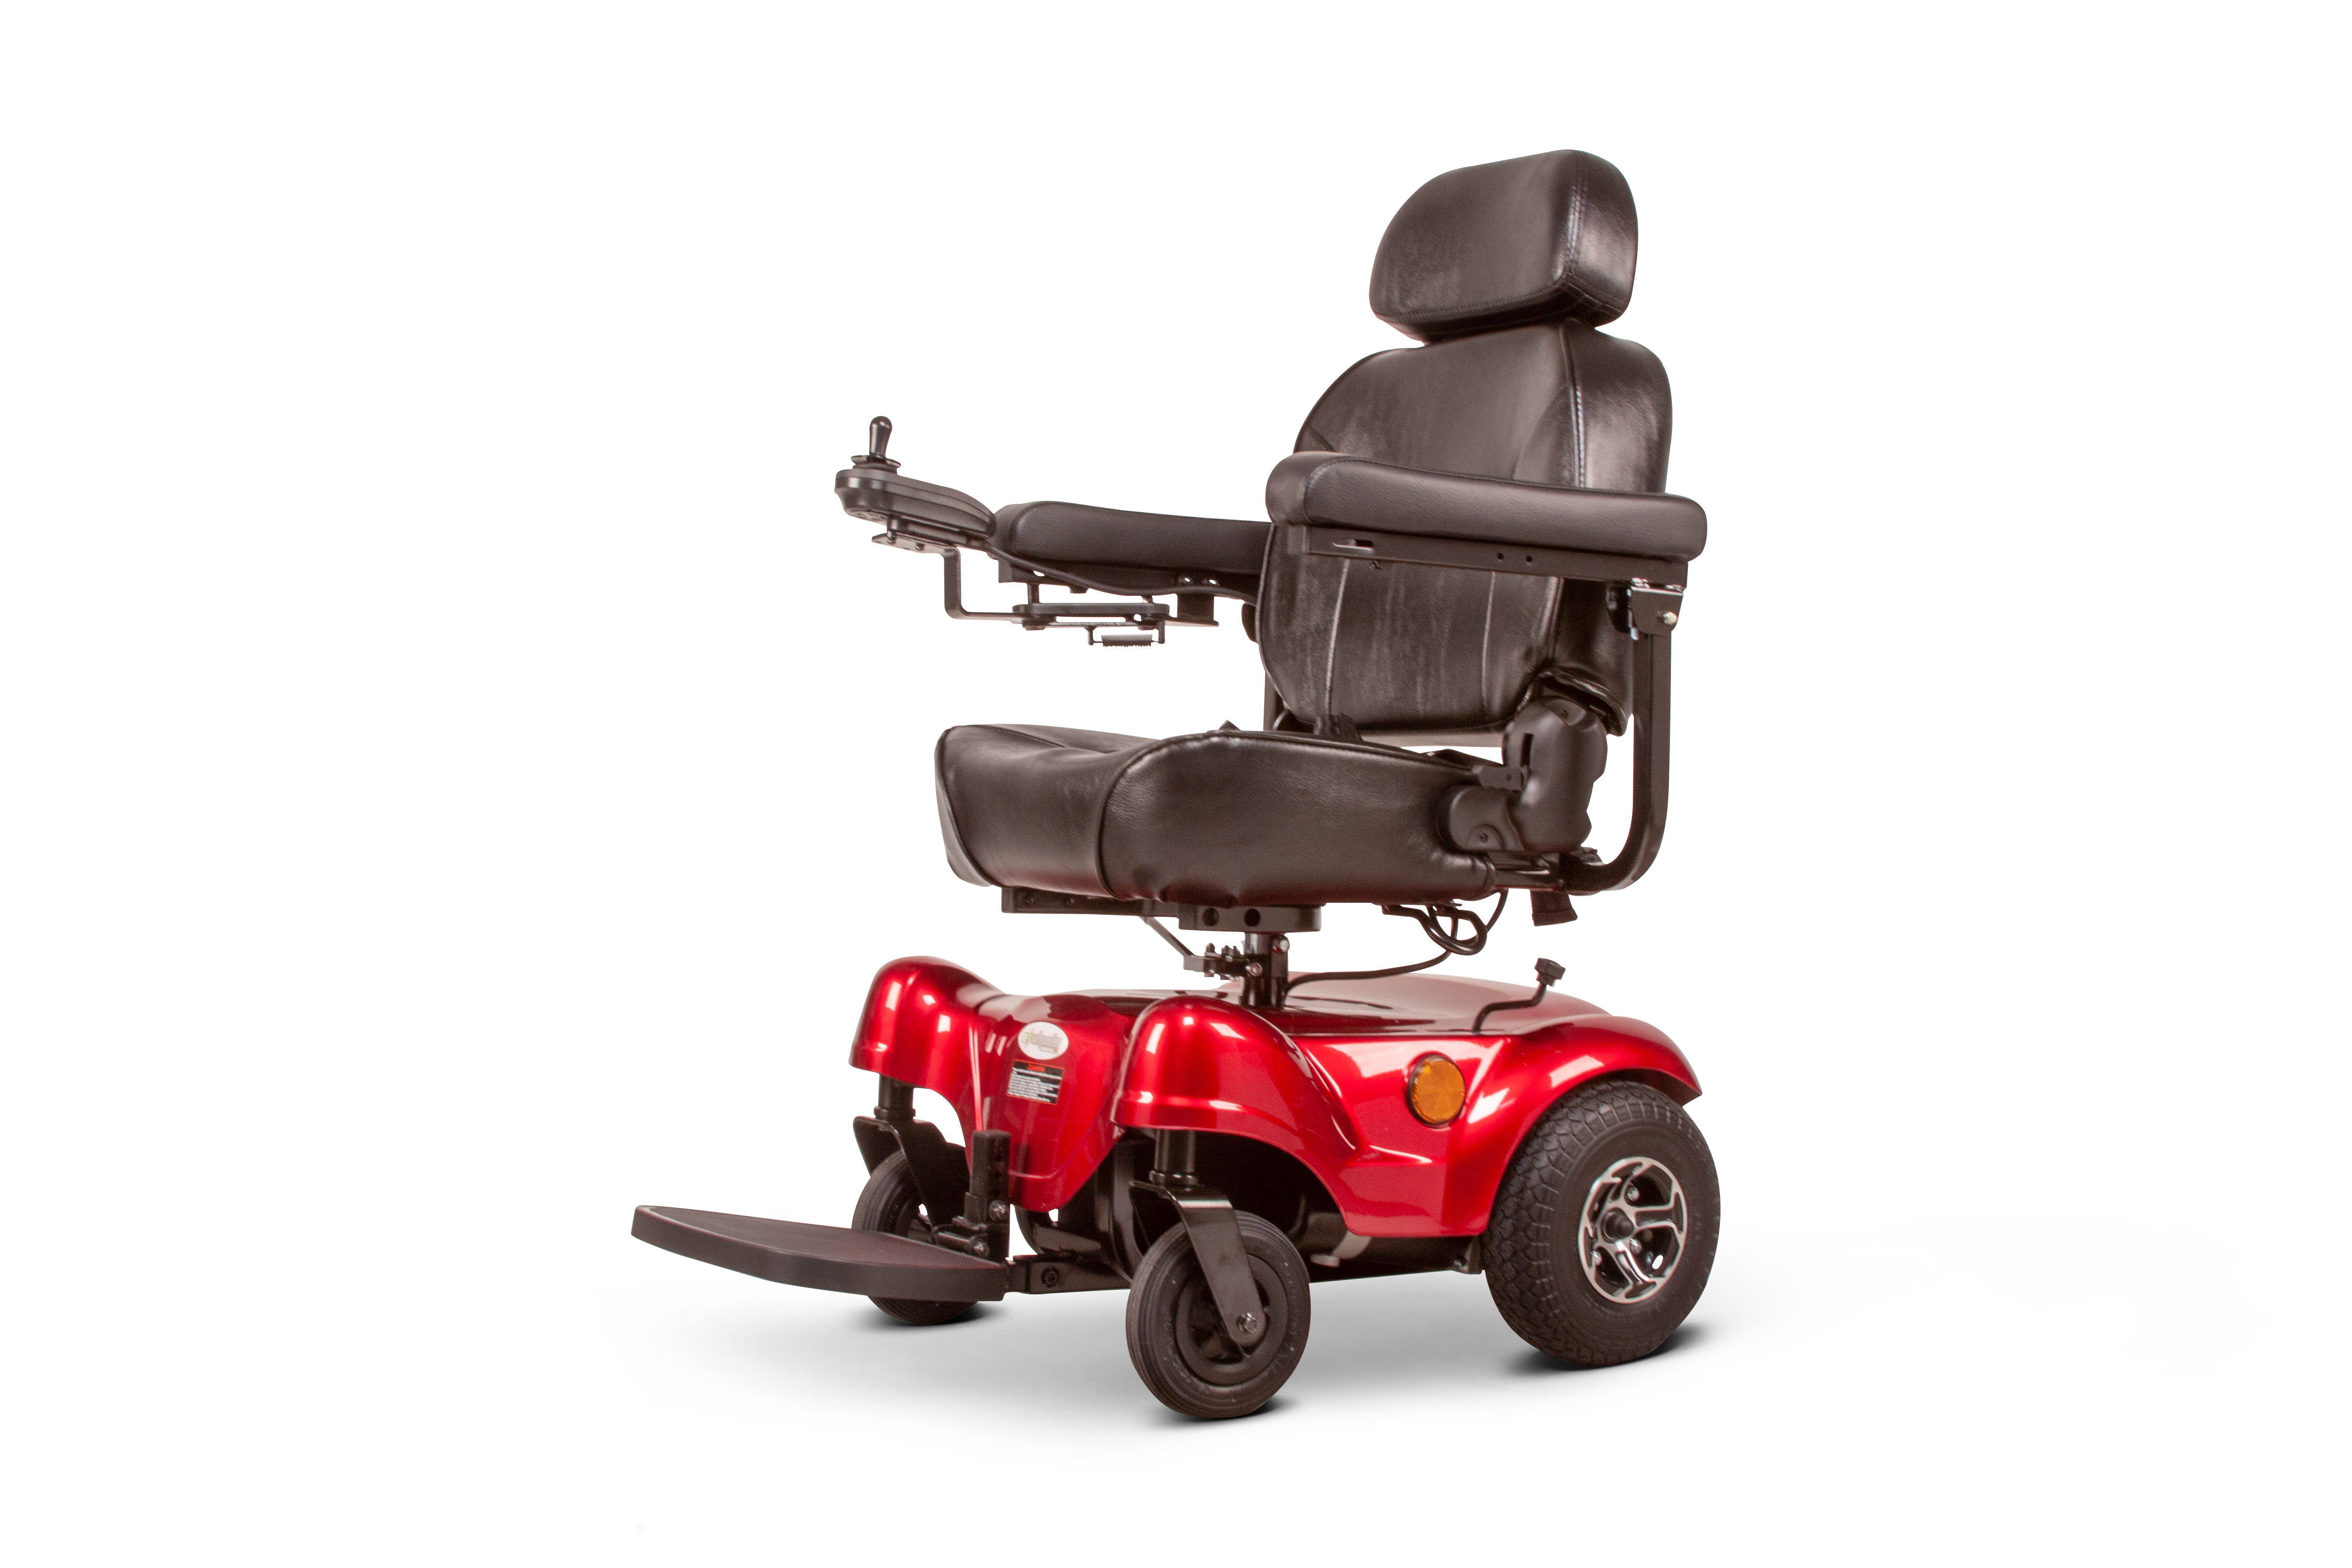 RED power wheelchair EW-M31 Electric Compact Power Wheelchair by EWheels - PureUps